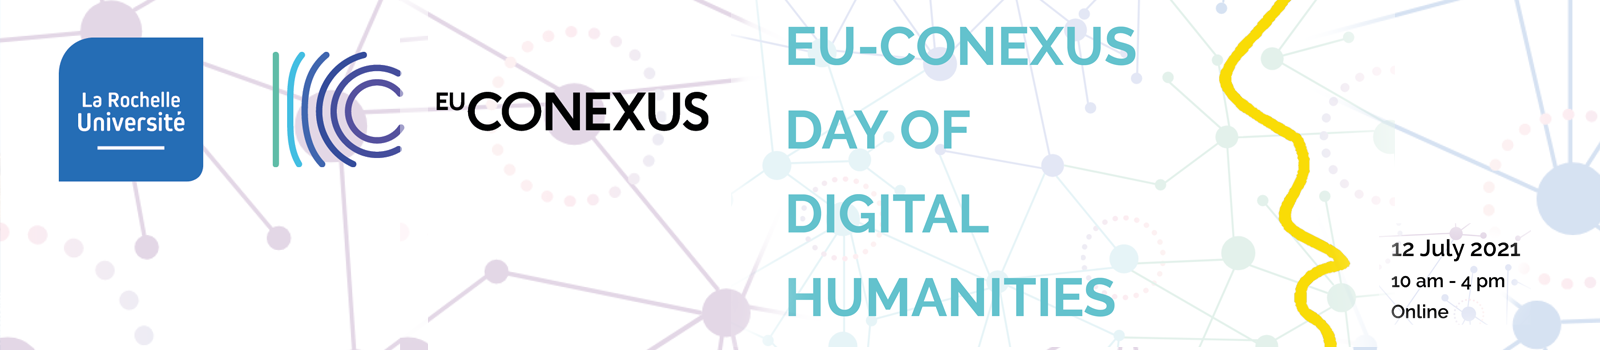 EU-CONEXUS Day of Digital Humanities